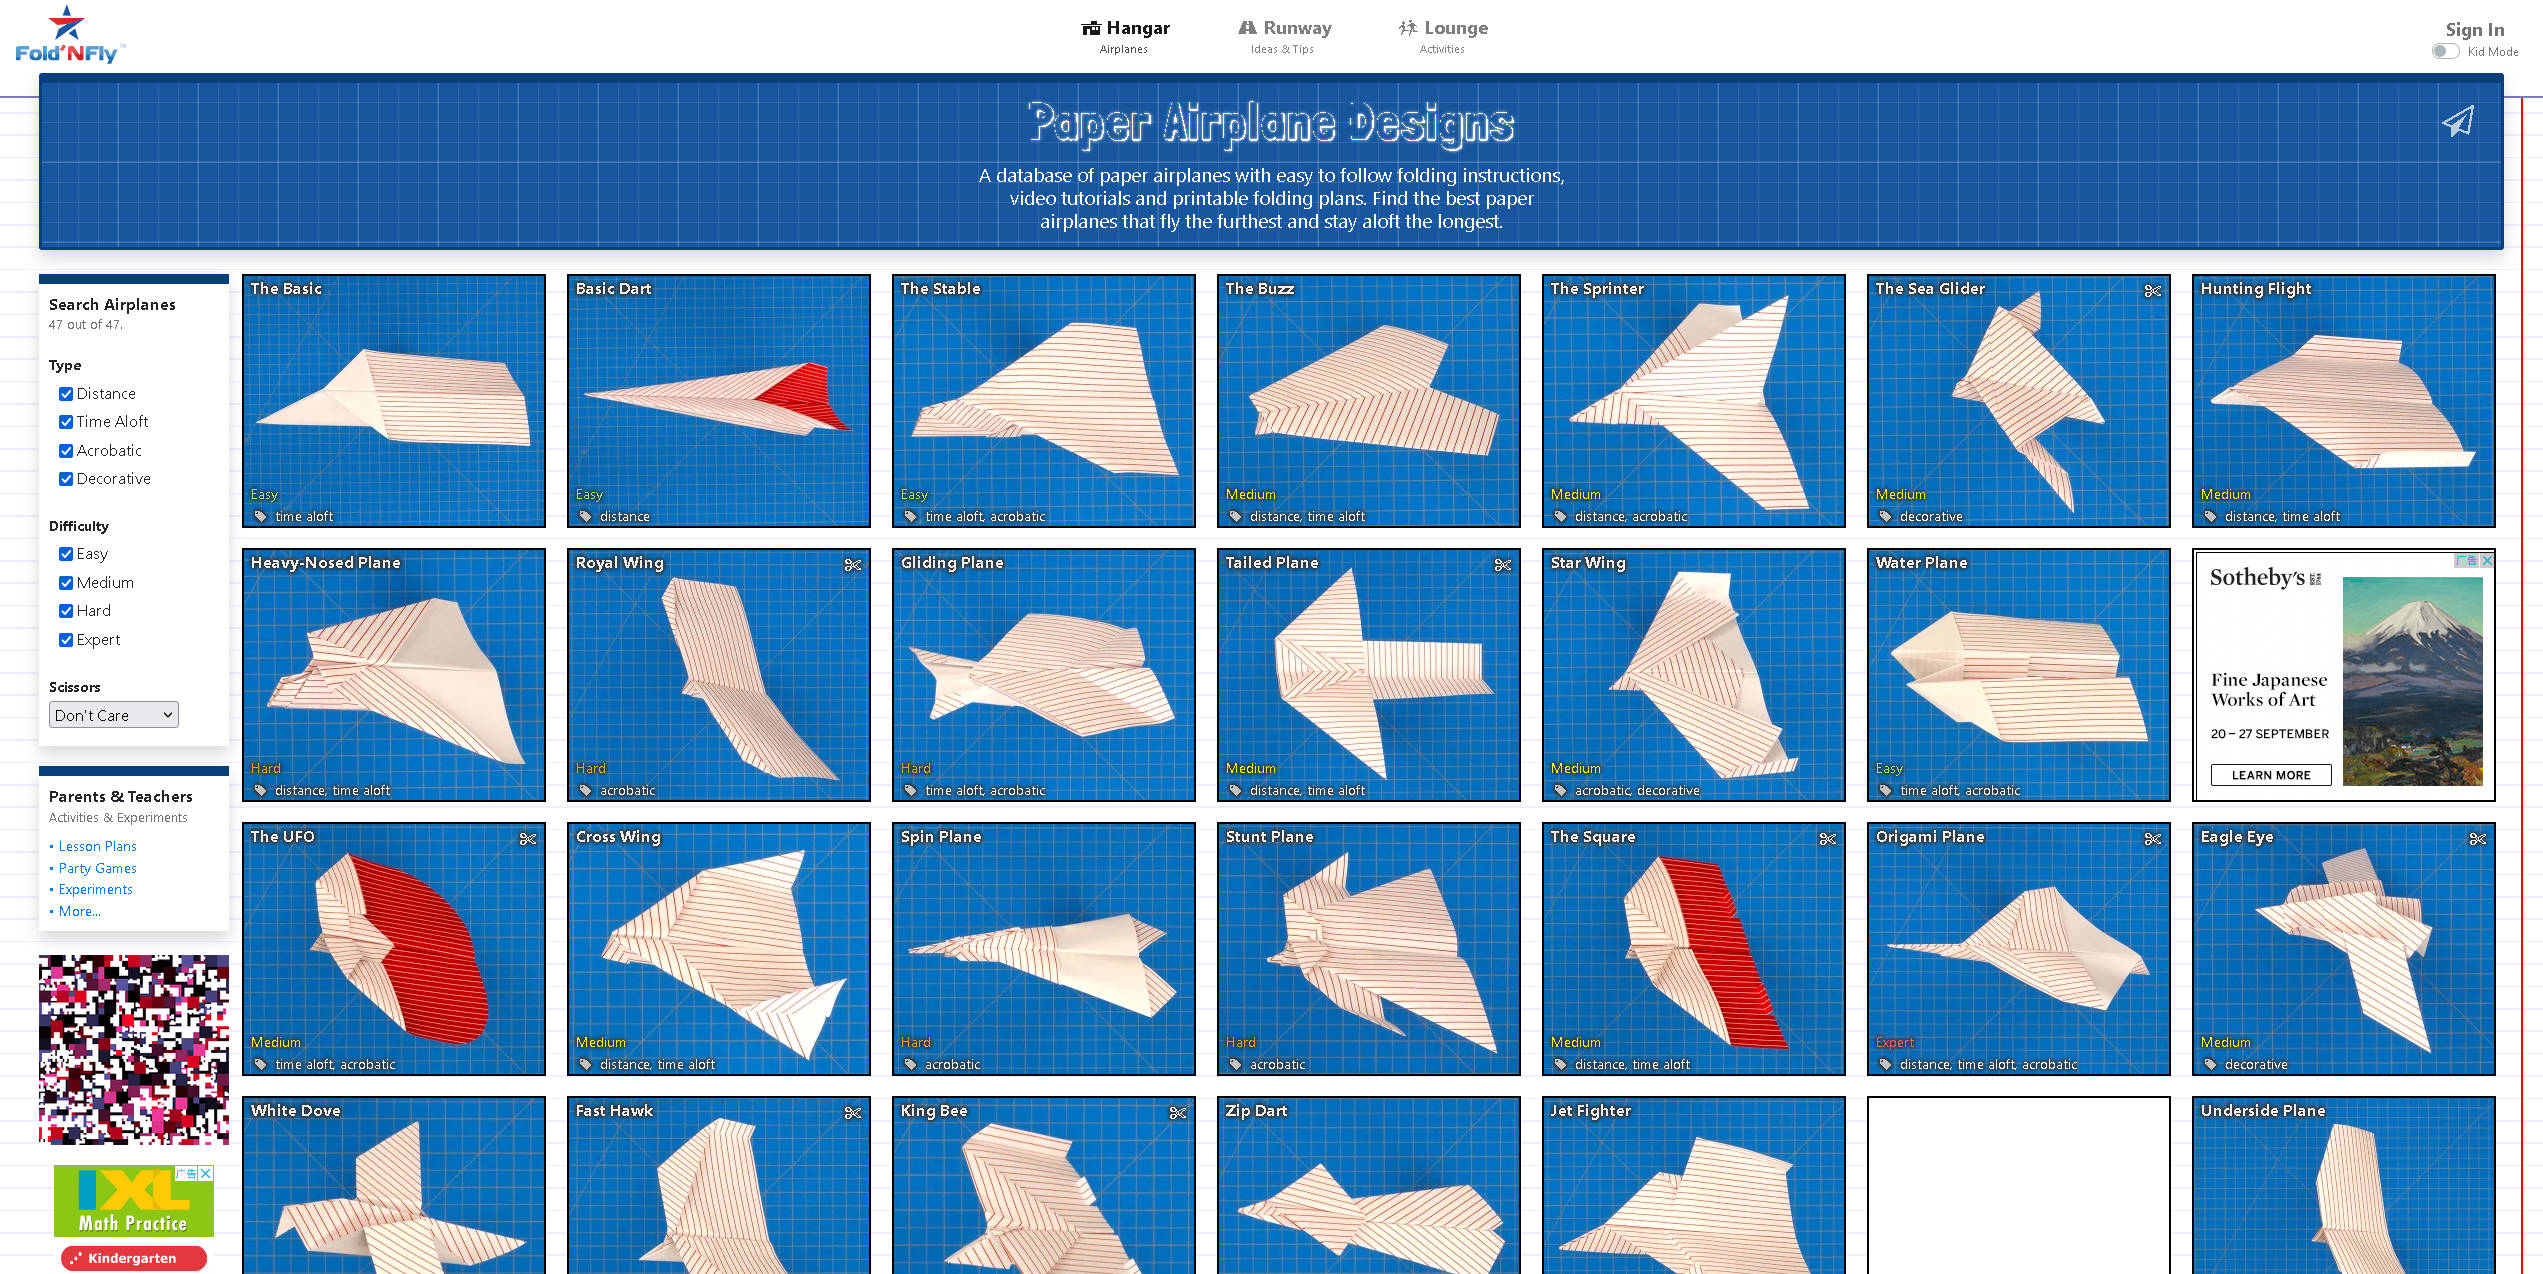 【网站】Fold 'N Fly » Paper Airplane Folding Instructions 纸质飞机大全